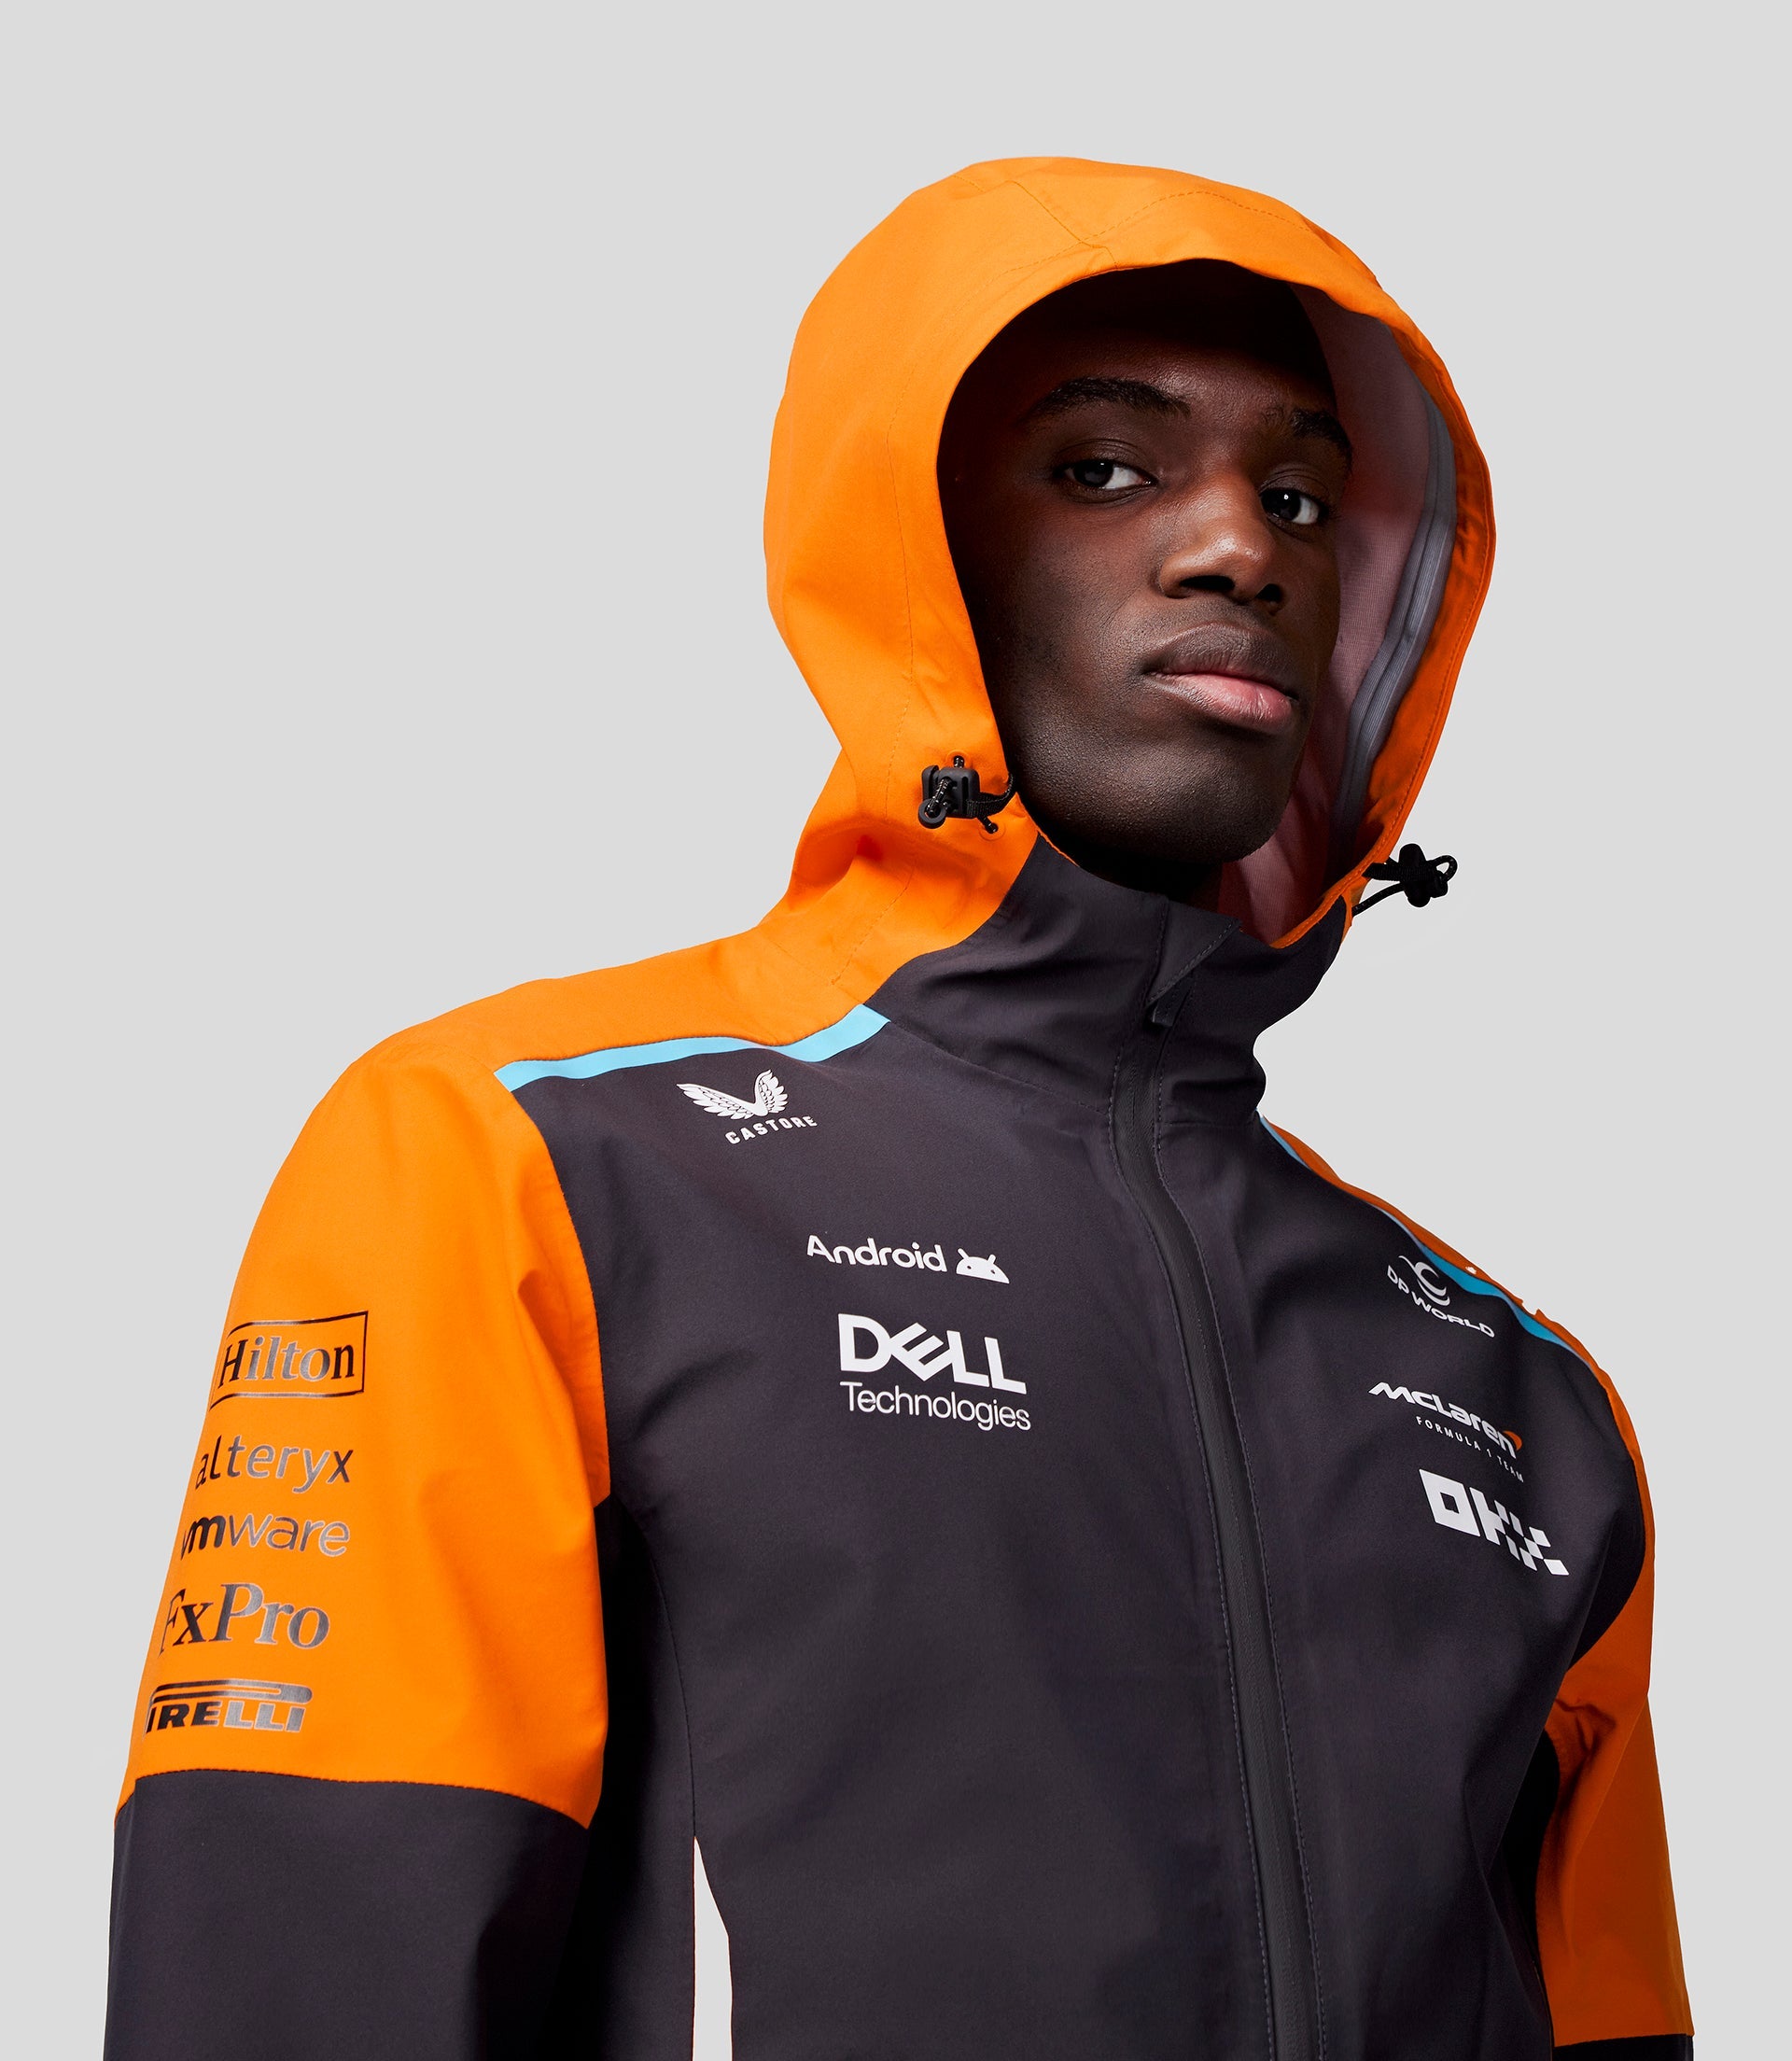 McLaren Unisex Official Teamwear Lightweight Rain Jacket Formula 1